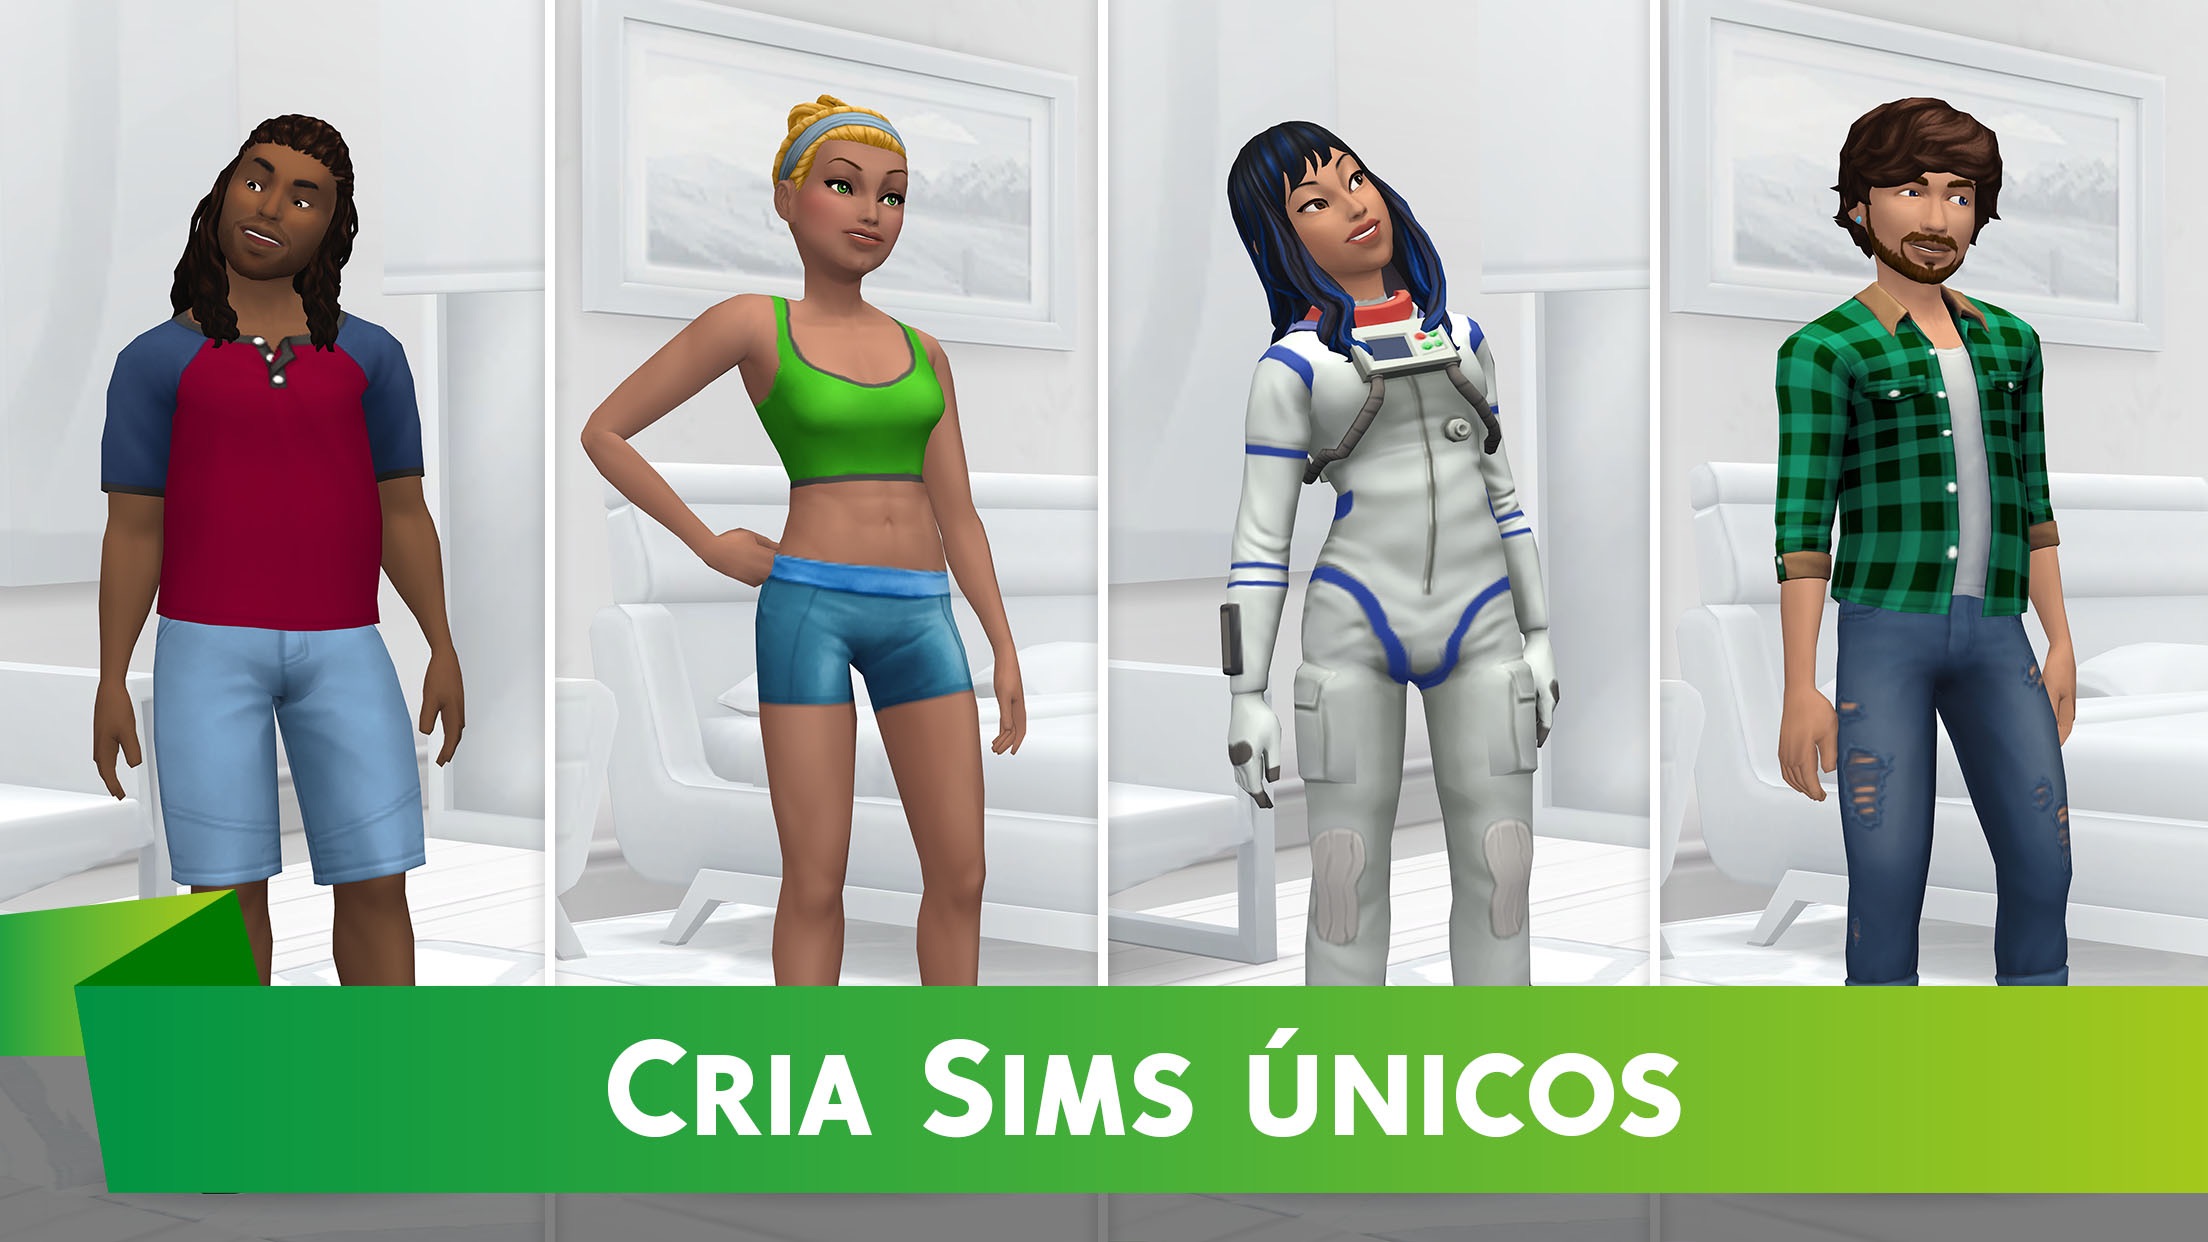 The Sims 4 é disponibilizado para download gratuito - MacMagazine